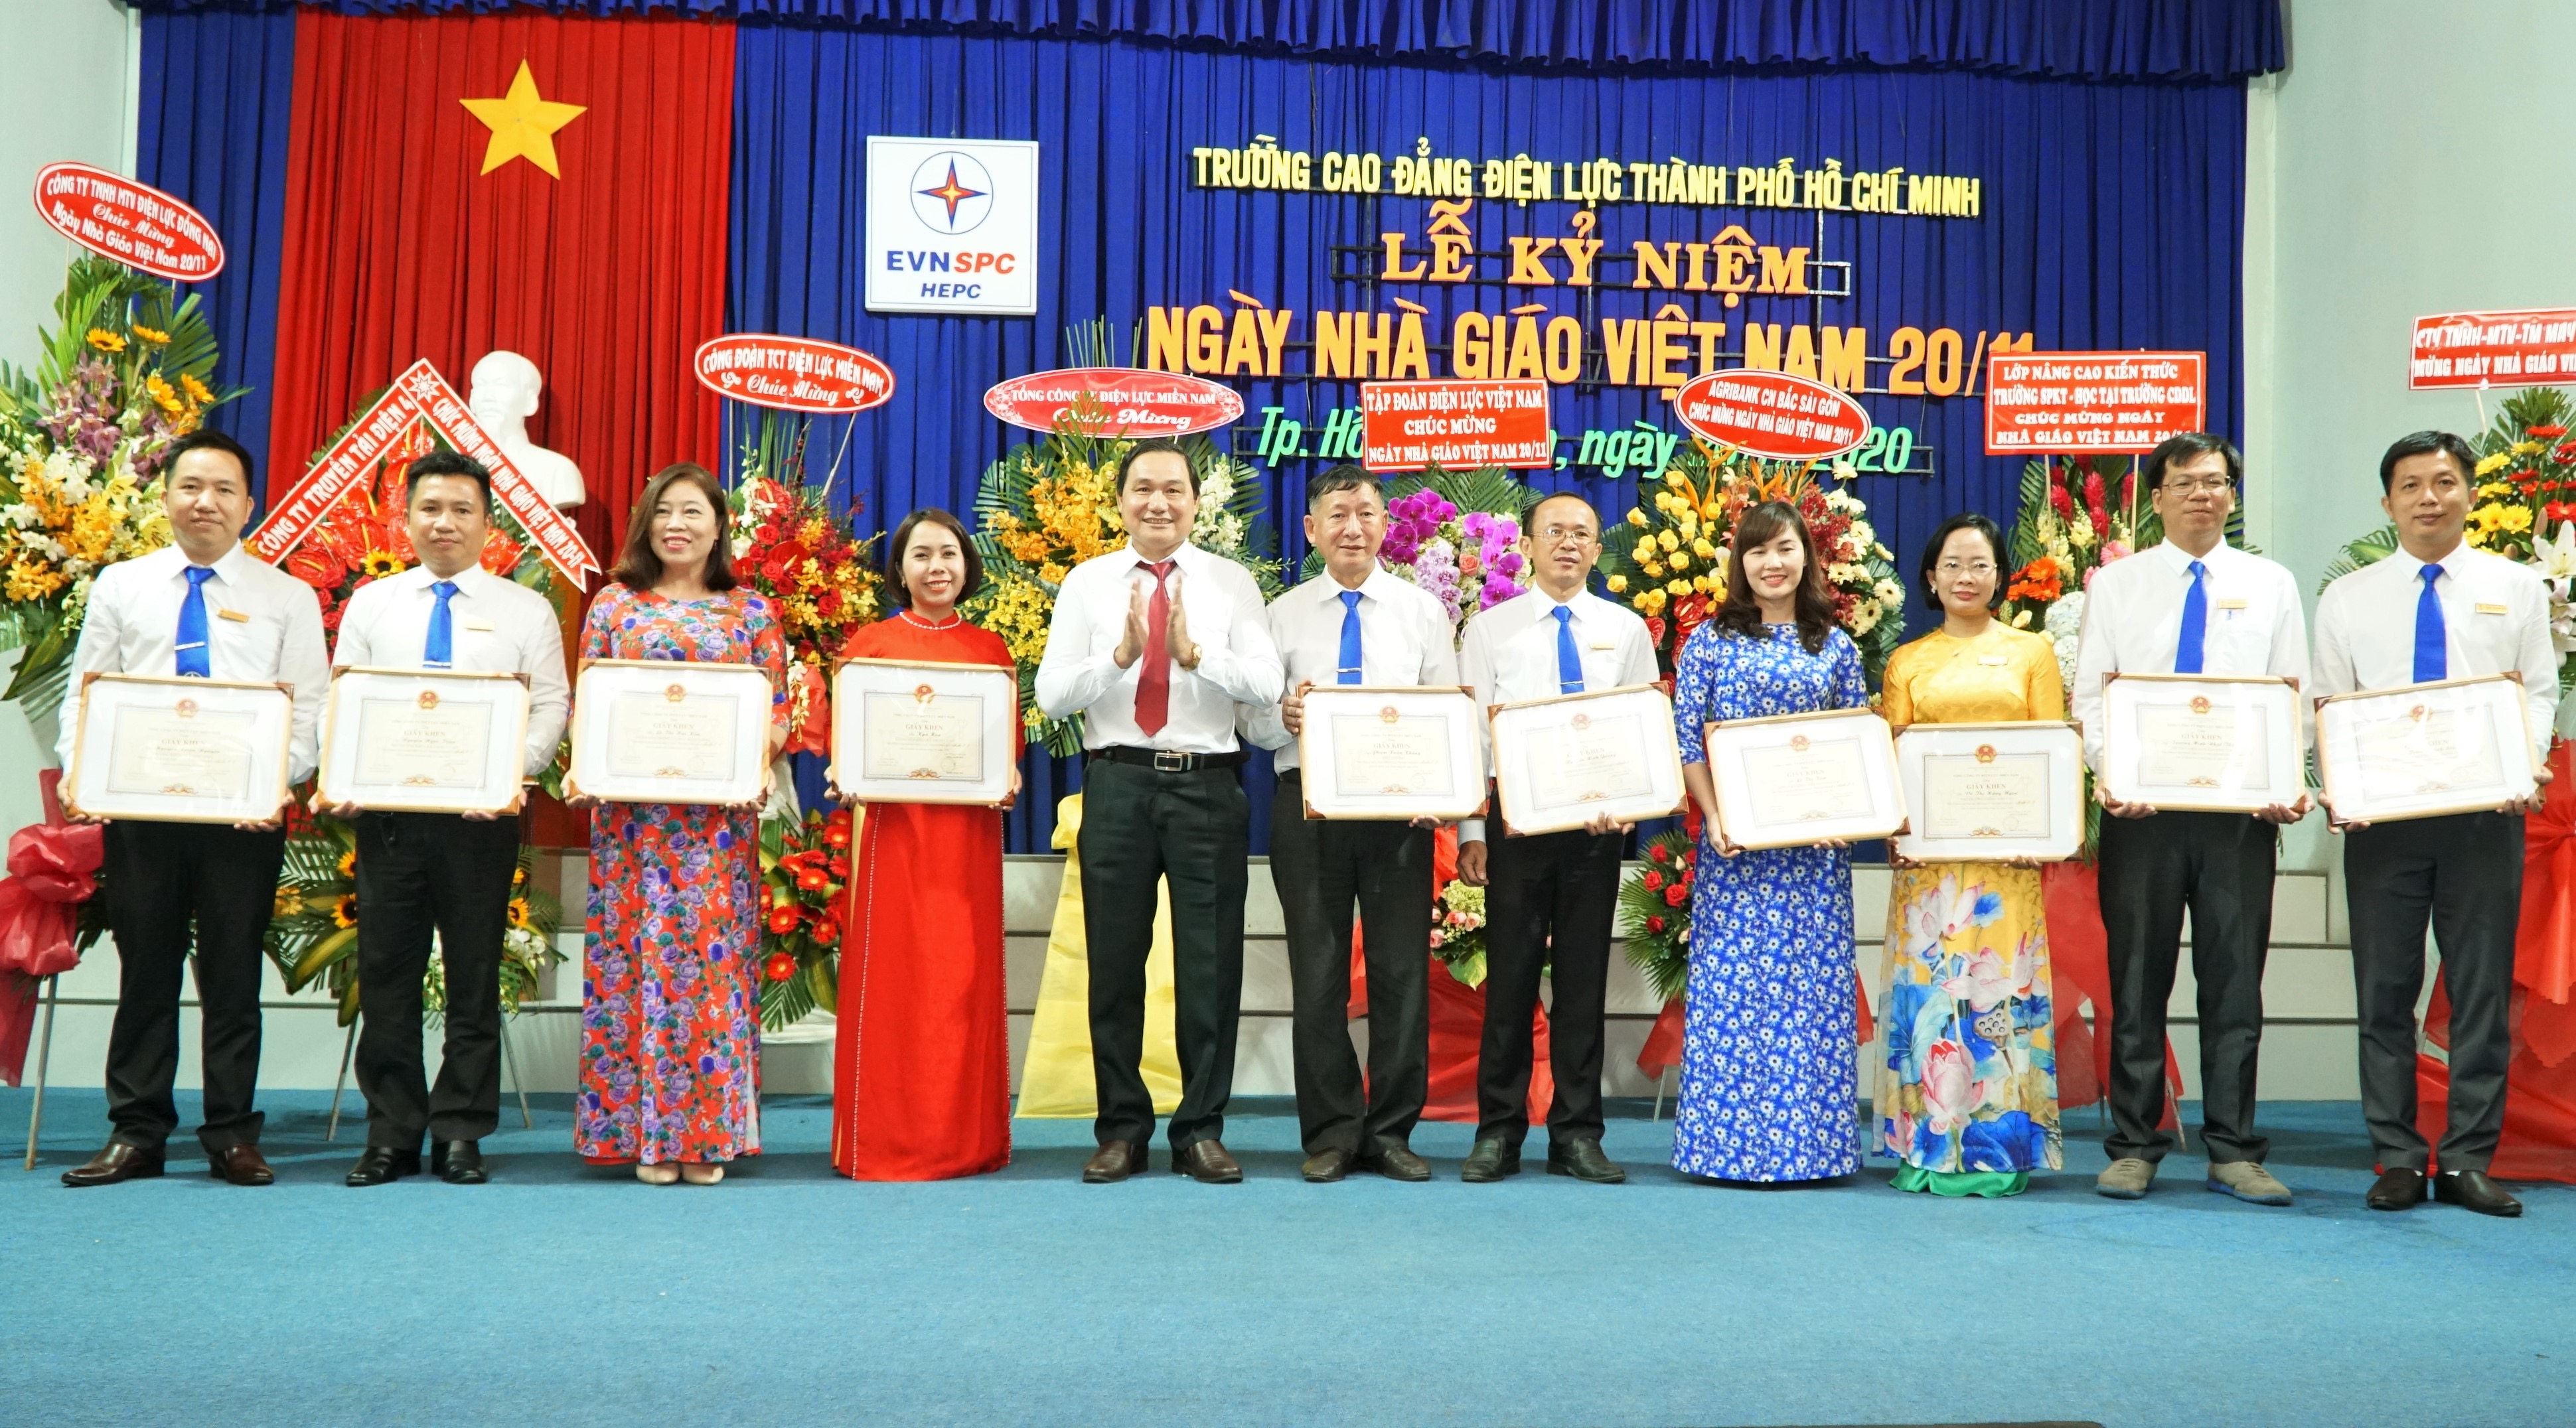 	Chủ tịch HĐTV EVNSPC Nguyễn Văn Hợp khen tặng các giảng viên nhà trường có thành tích công tác xuất sắc trong 2020